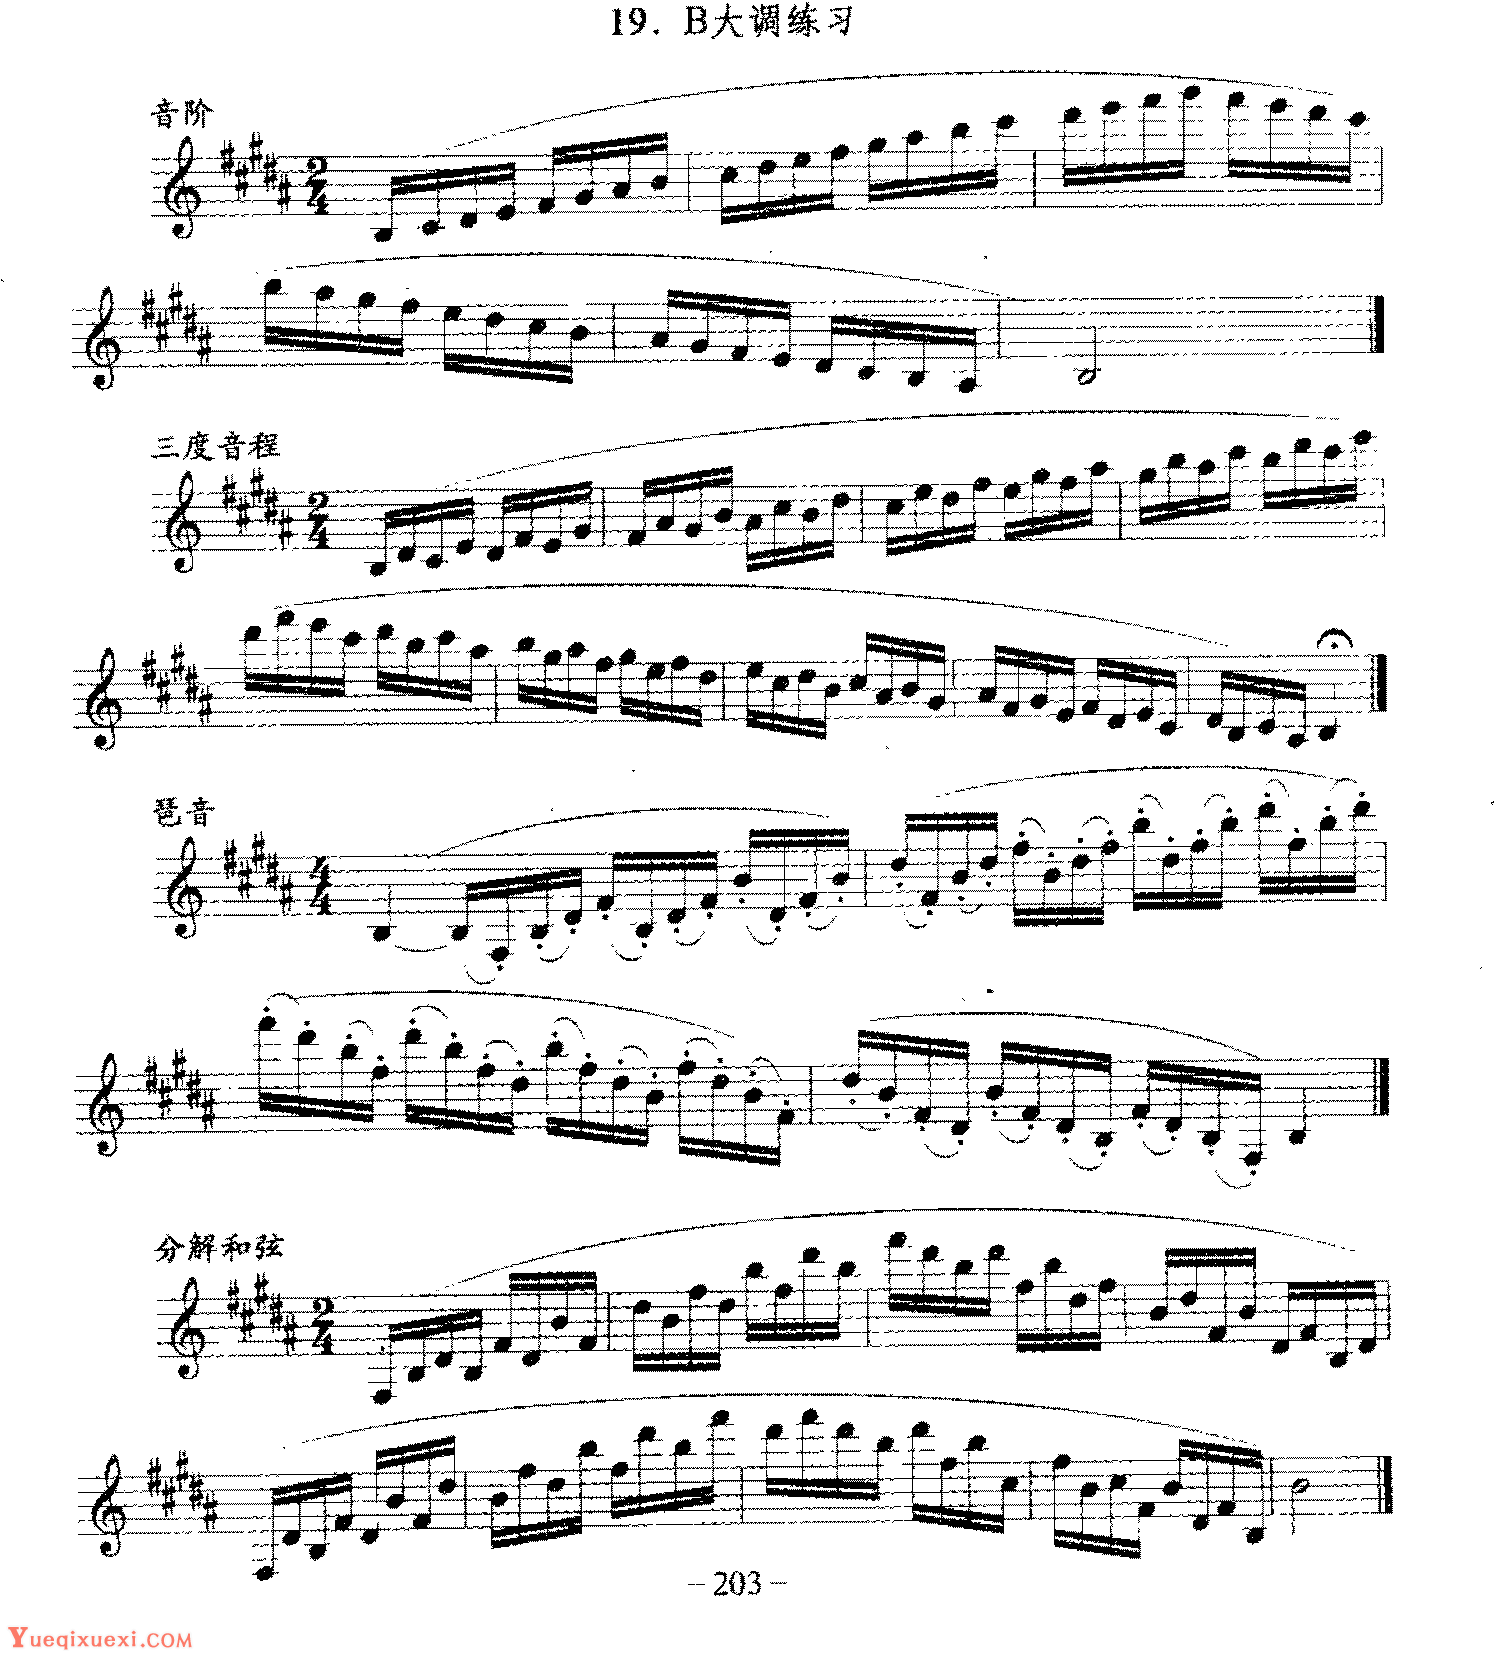 单簧管日常基础技术练习曲《B大调练习》